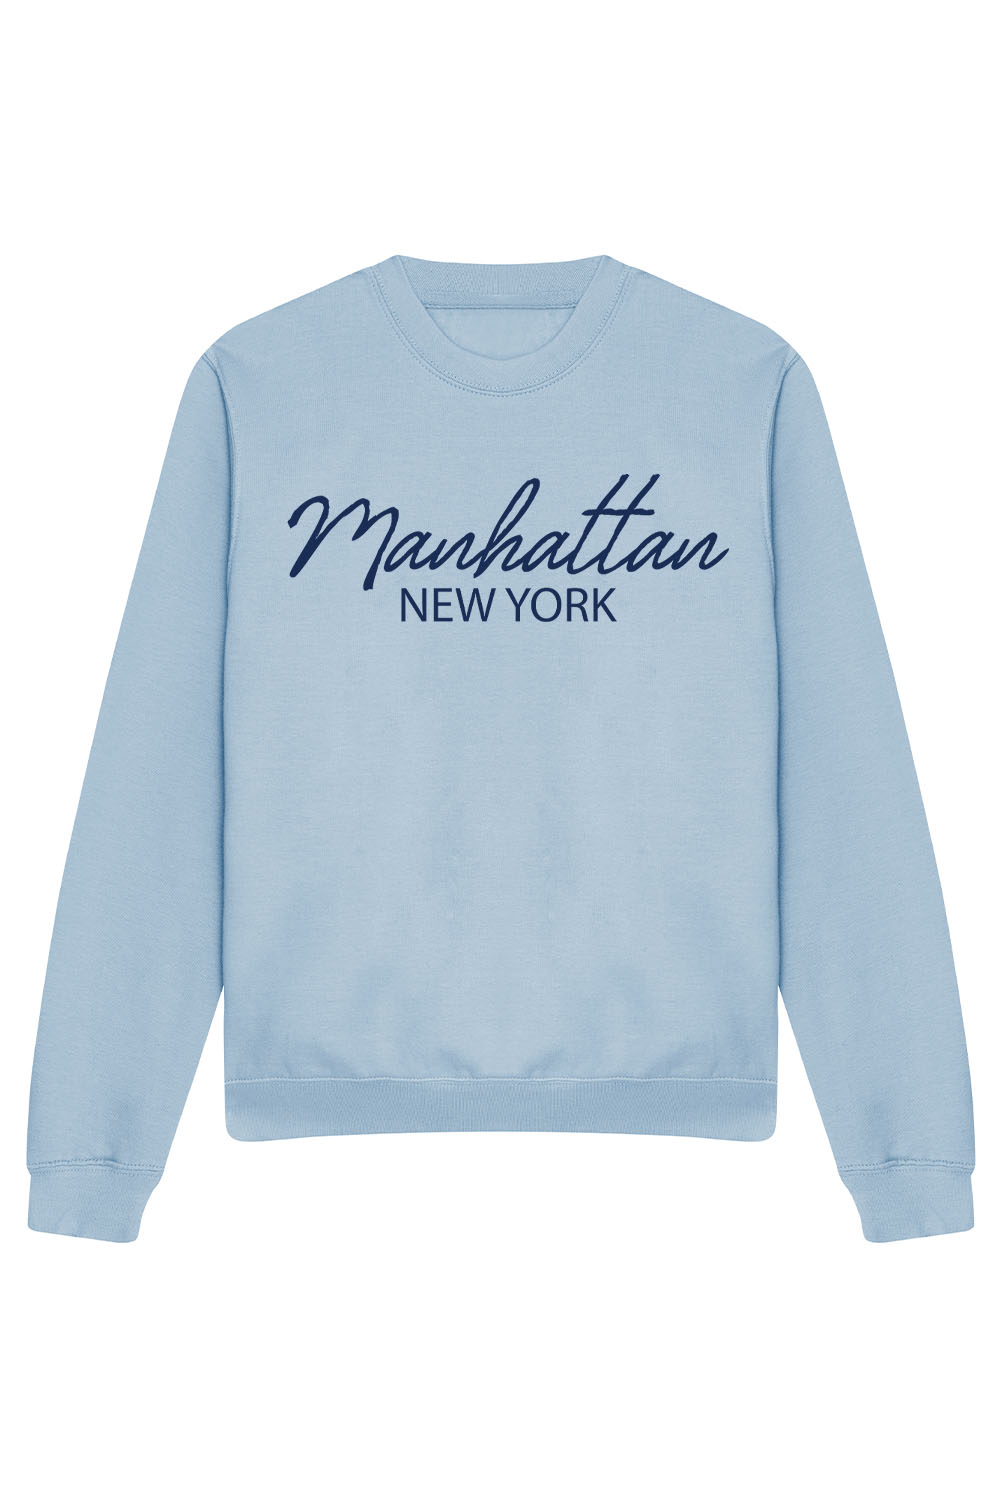 Manhattan Sweatshirt In Sky Blue (CUSTOM PACKS)